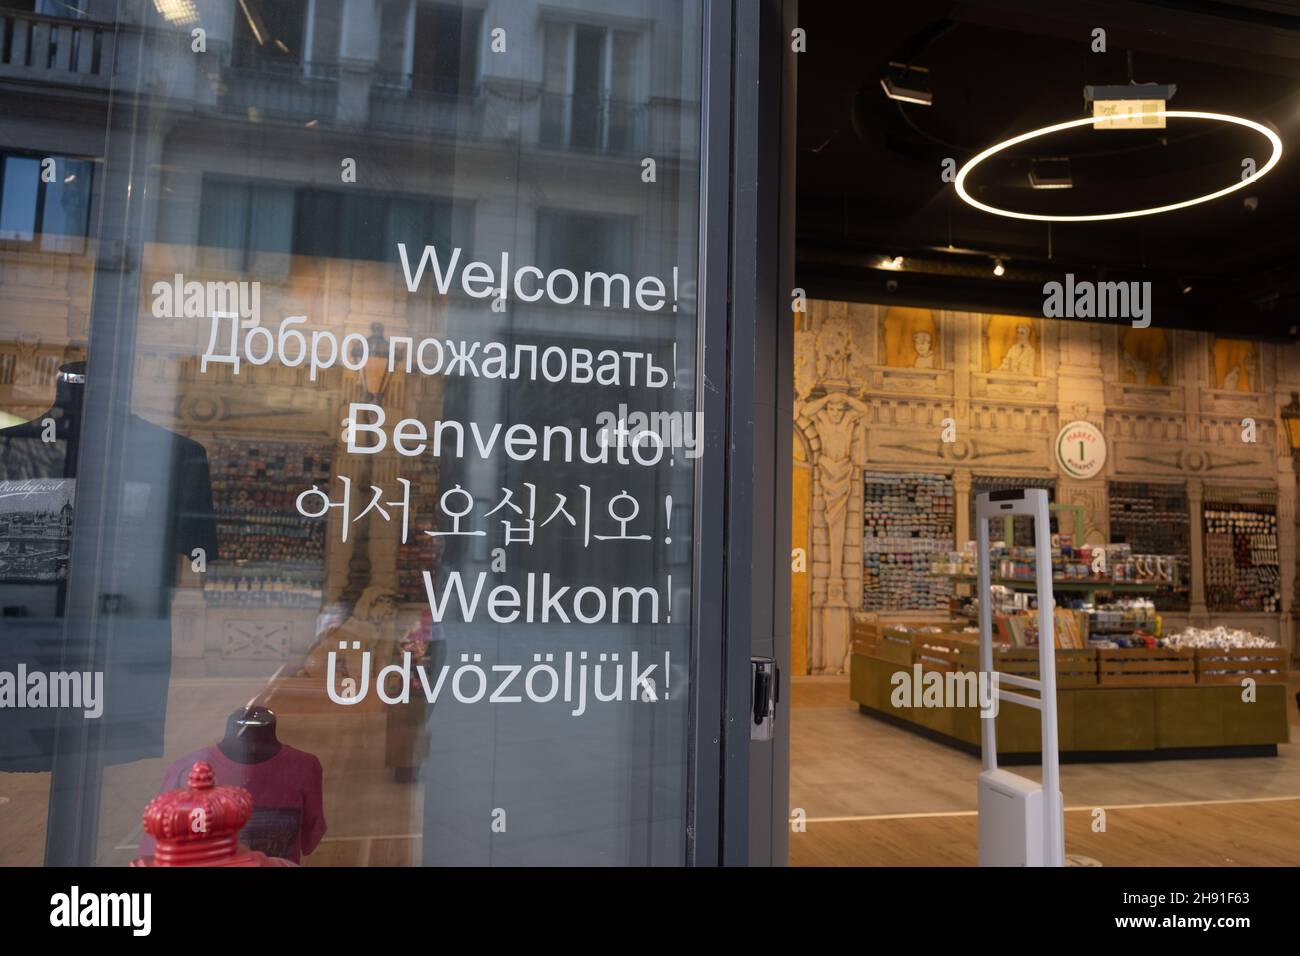 Budapest, Hungría - 1 de noviembre de 2021: Entrada a la tienda, letras de bienvenida en la puerta en diferentes idiomas, Editorial ilustrativa. Foto de stock